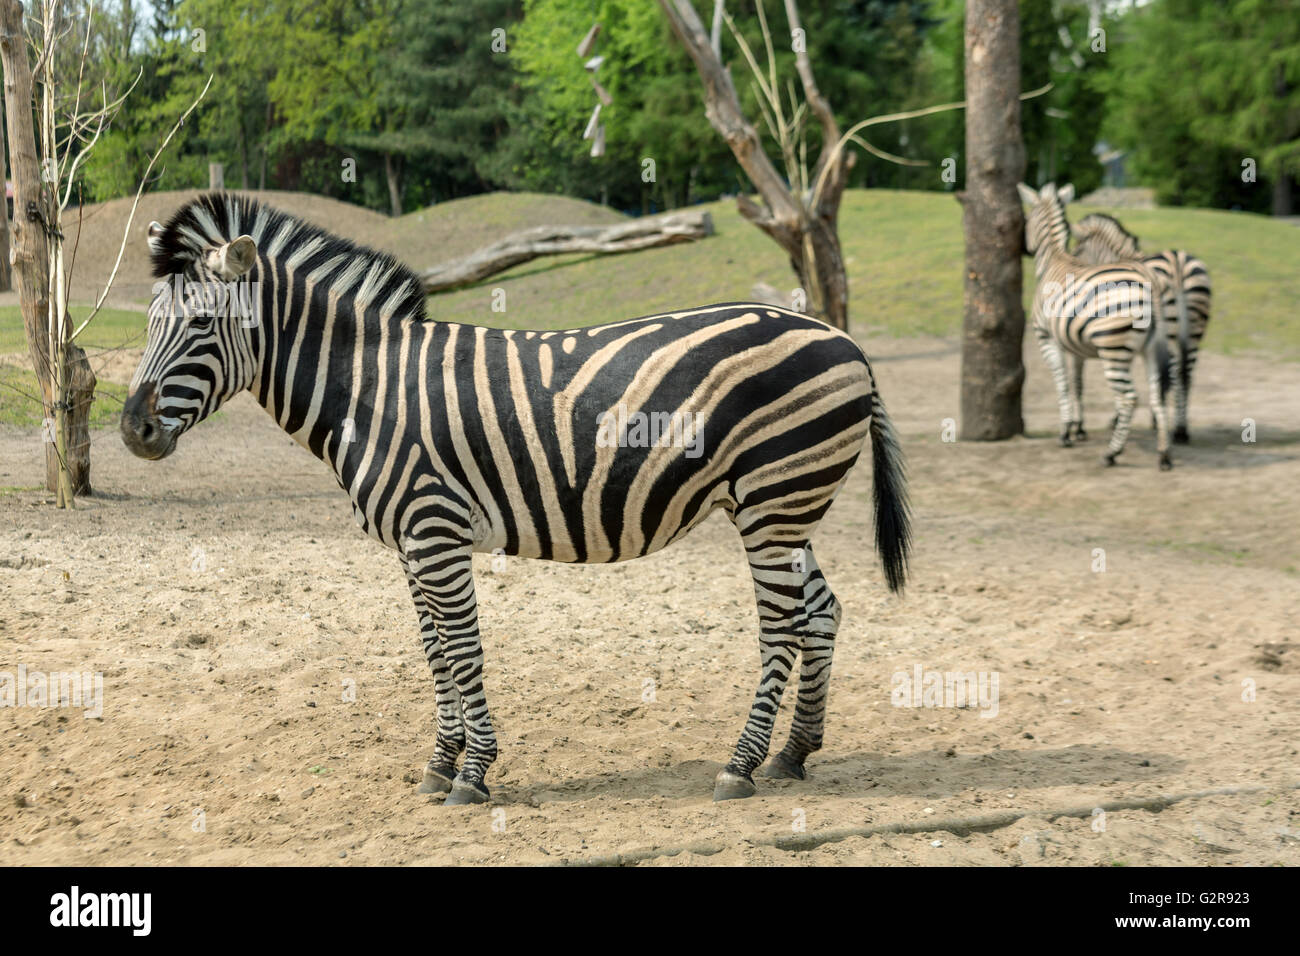 05.05.2015, Wroclaw, Bassa Slesia, Polonia - Chapman's zebre allo zoo di Wroclaw. Si sono una sottospecie di pianura zebra. / Chapman's zebre allo Zoo di Wroclaw. Essi sono una sottospecie di pianura zebra. 00A150505D141CAROEX.JPG - non per la vendita in G E R M A N Y, A U S T R I A, S W I T Z e R L A N D [modello di rilascio: non applicabile, la proprietà di rilascio: NO, (c) caro agenzia fotografica / Bastian, http://www.caro-images.com, info@carofoto.pl - Qualsiasi uso di questa immagine è soggetto a royalty!] Foto Stock